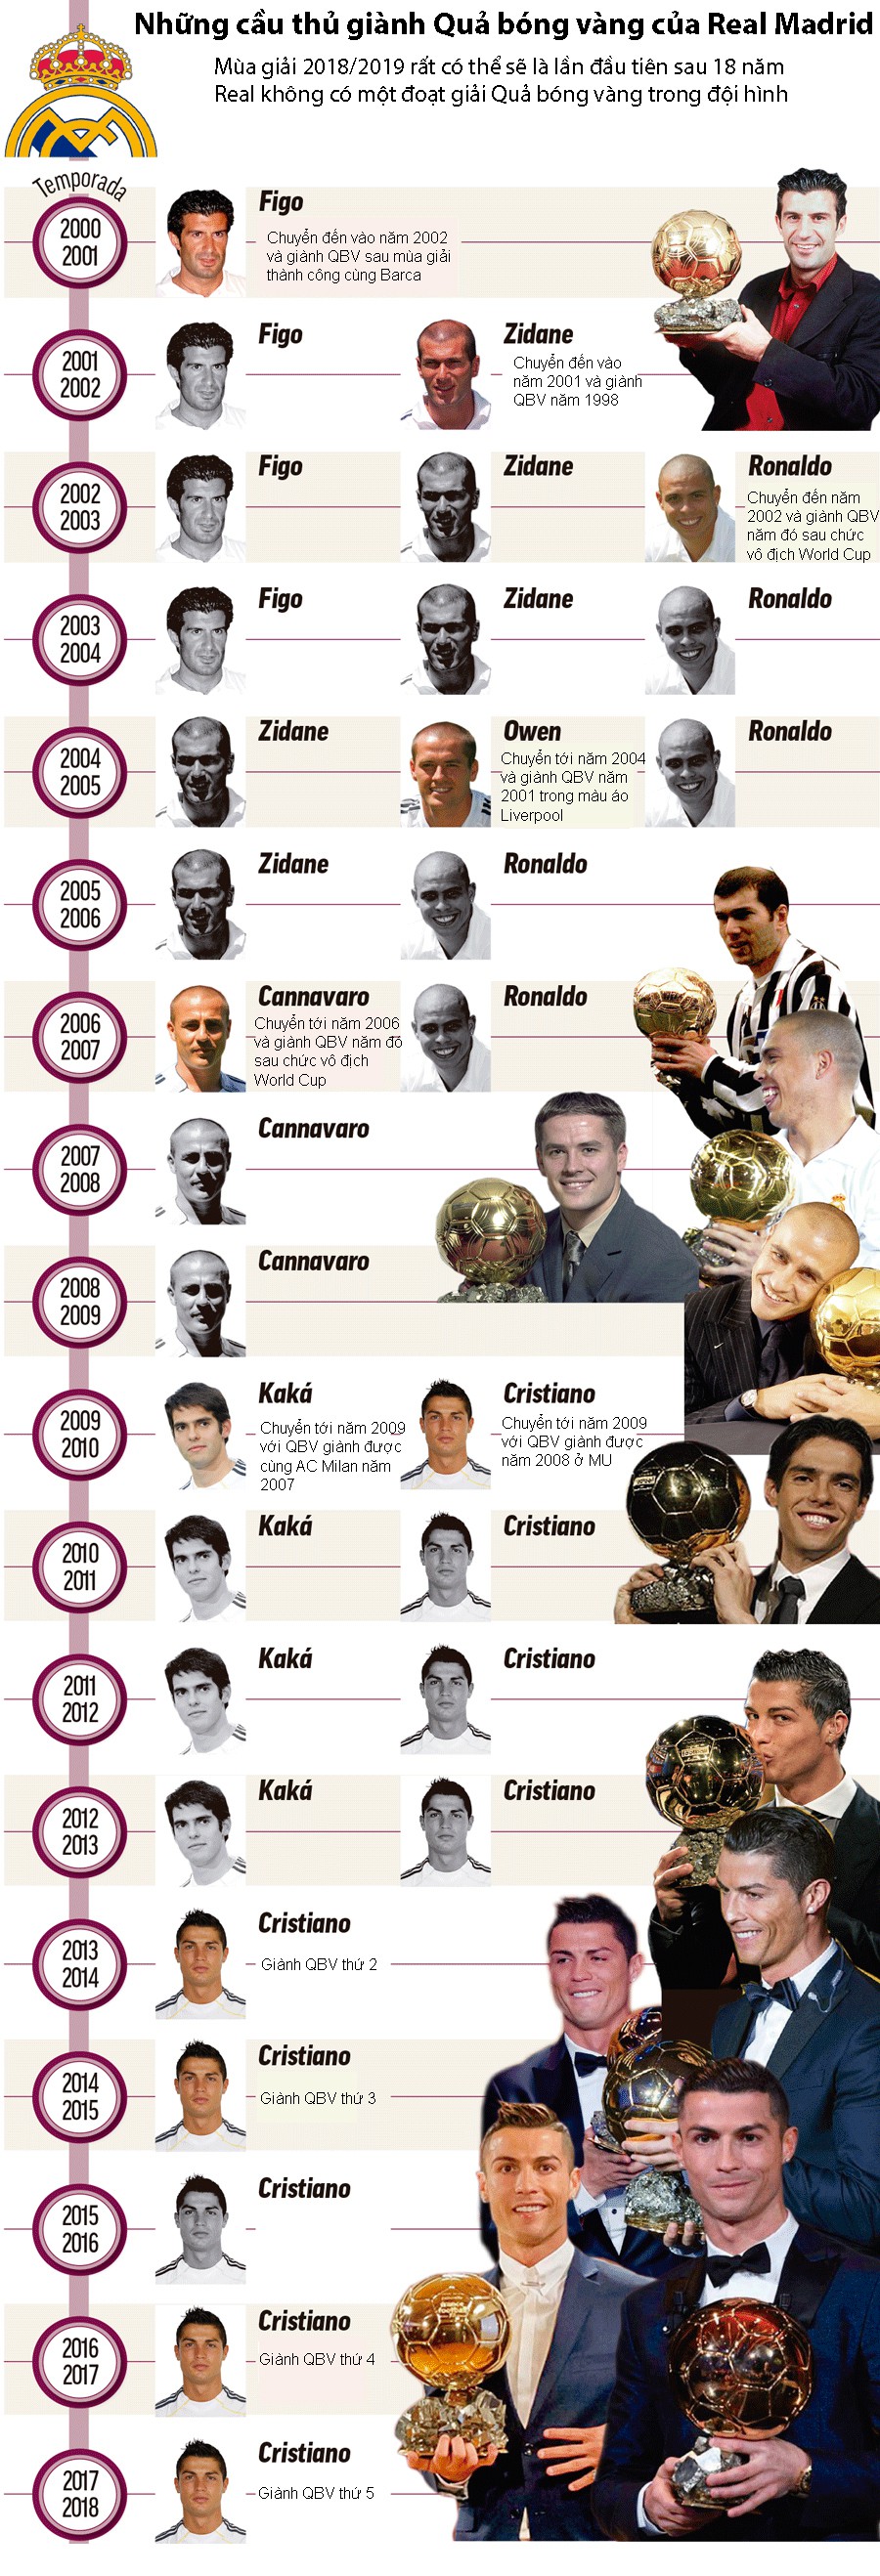 Ronaldo ra đi, Real Madrid hết quả bóng vàng trong đội hình sau 2 thập kỷ - Ảnh 3.